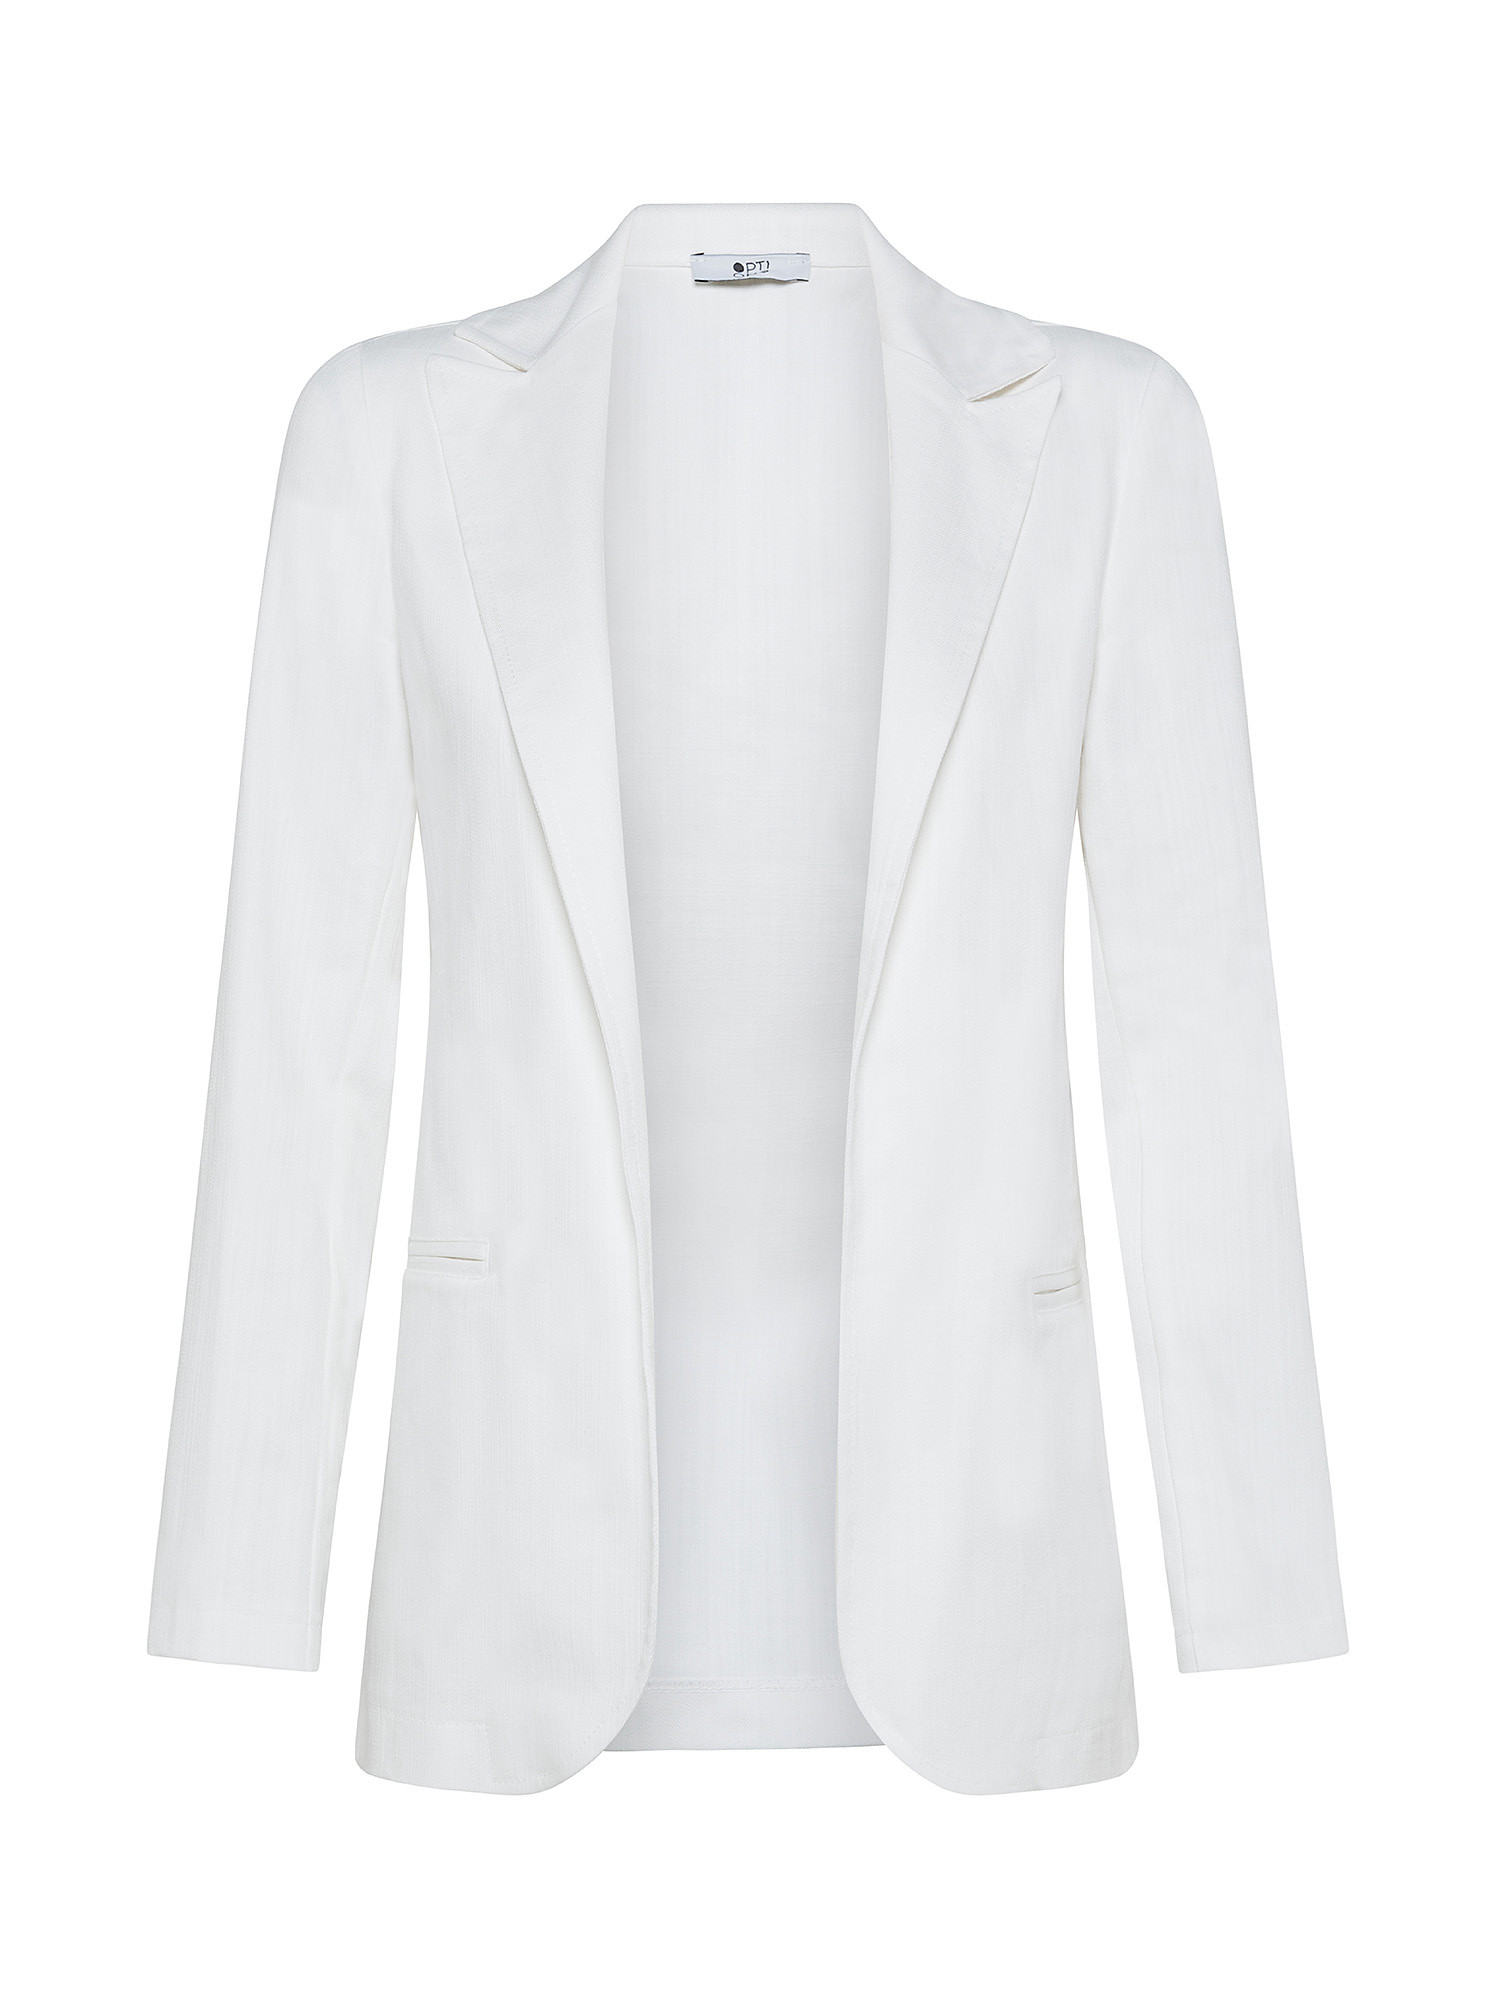 Denim jacket, White, large image number 0